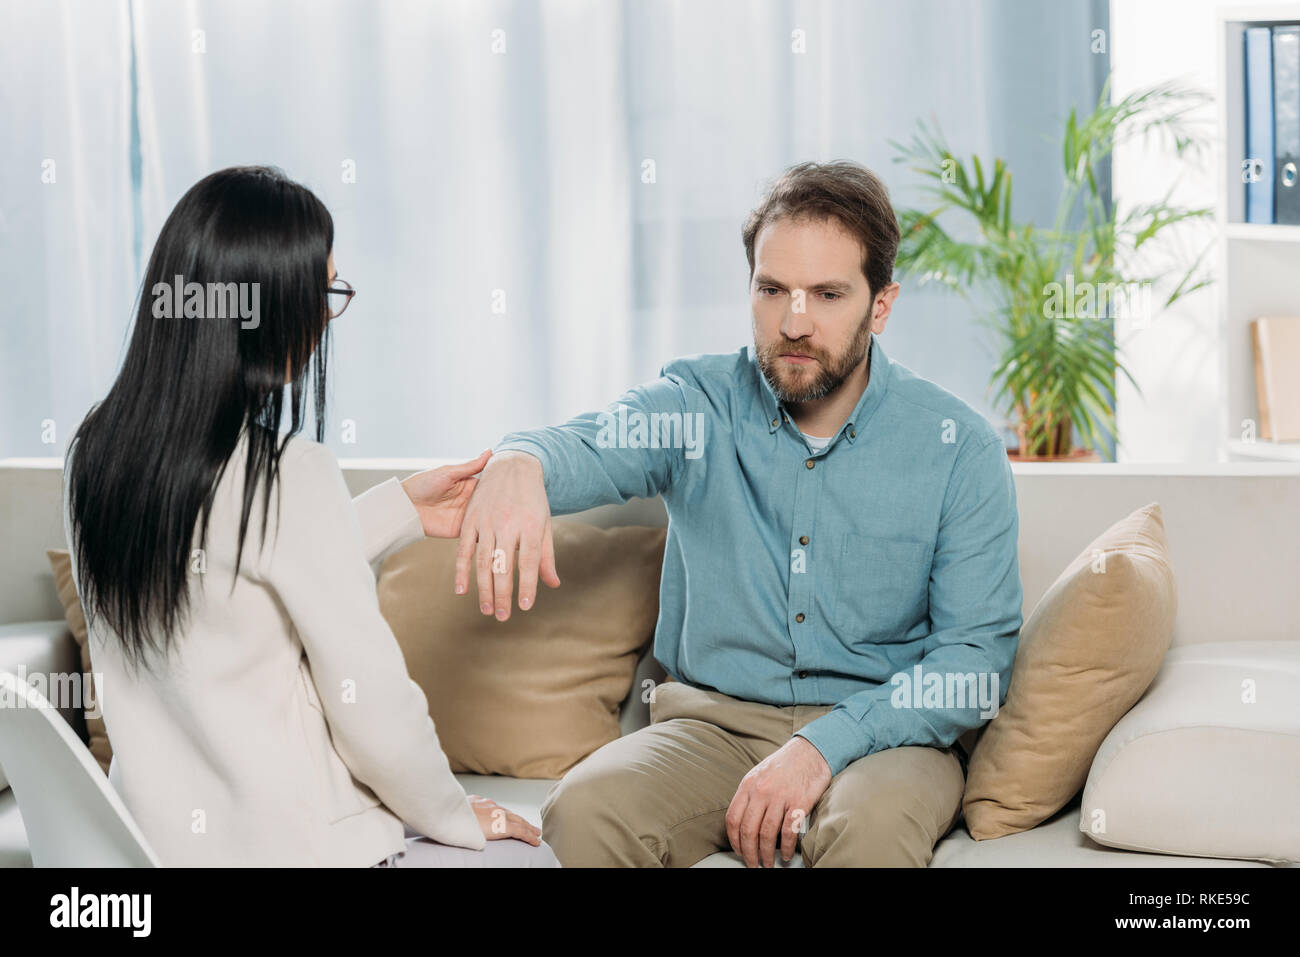 Junge Frau mit Handgelenk der bärtige Mann sitzt auf der Couch während der Hypnotherapie Stockfoto